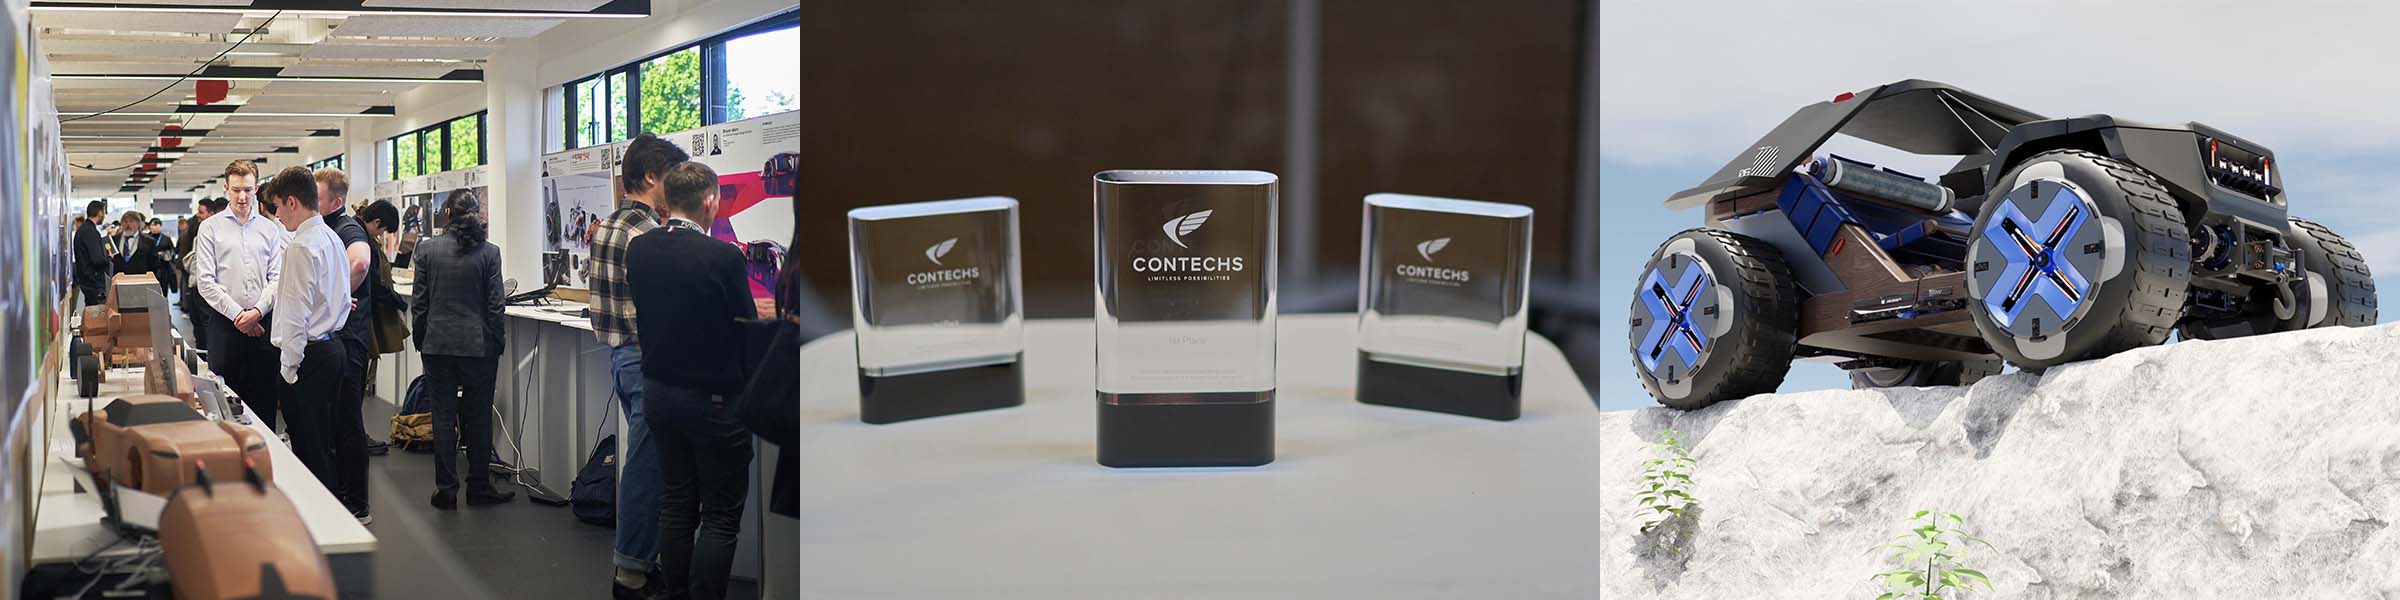 Contechs Design Award